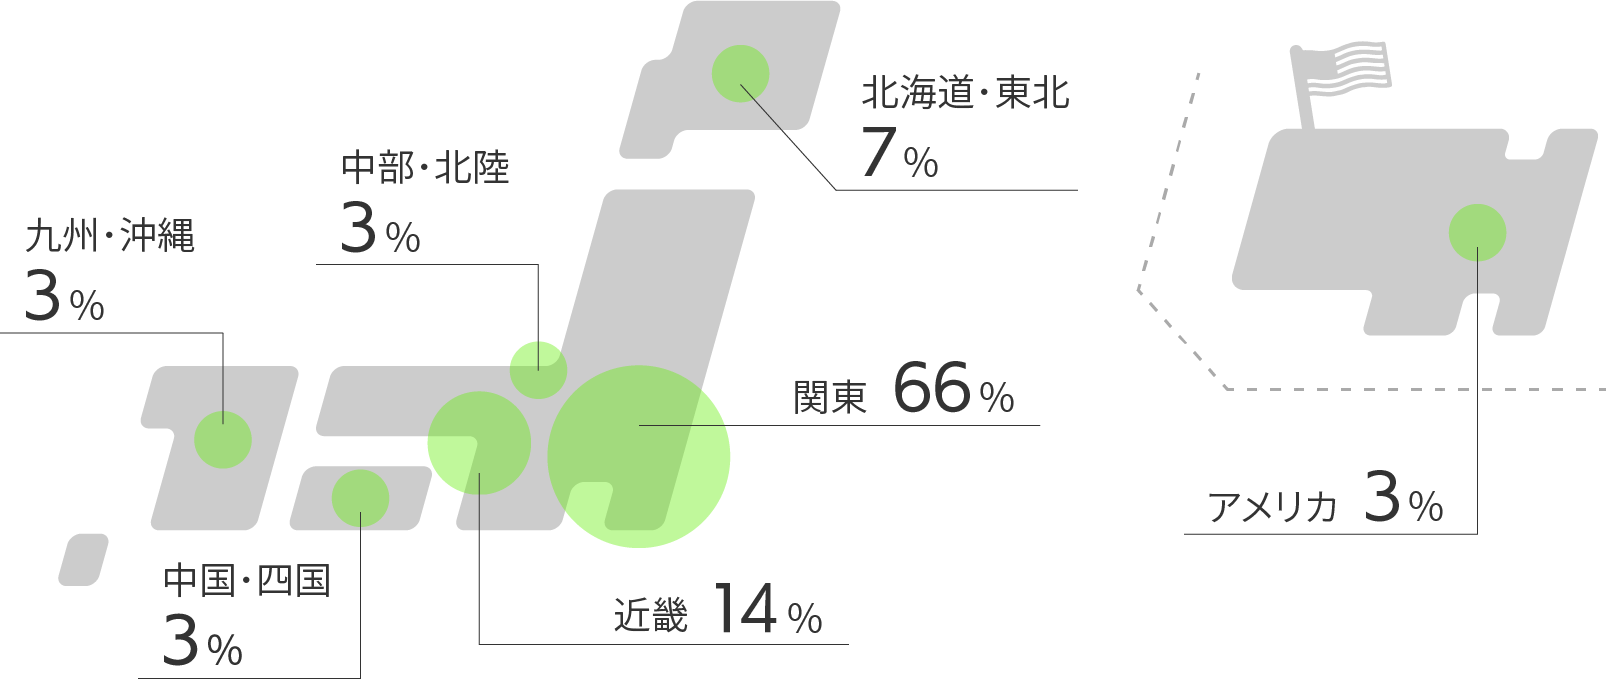 北海道・東北7%、関東66%、中部・北陸3%、近畿14%、中国・四国3%、九州・沖縄3%、アメリカ3%